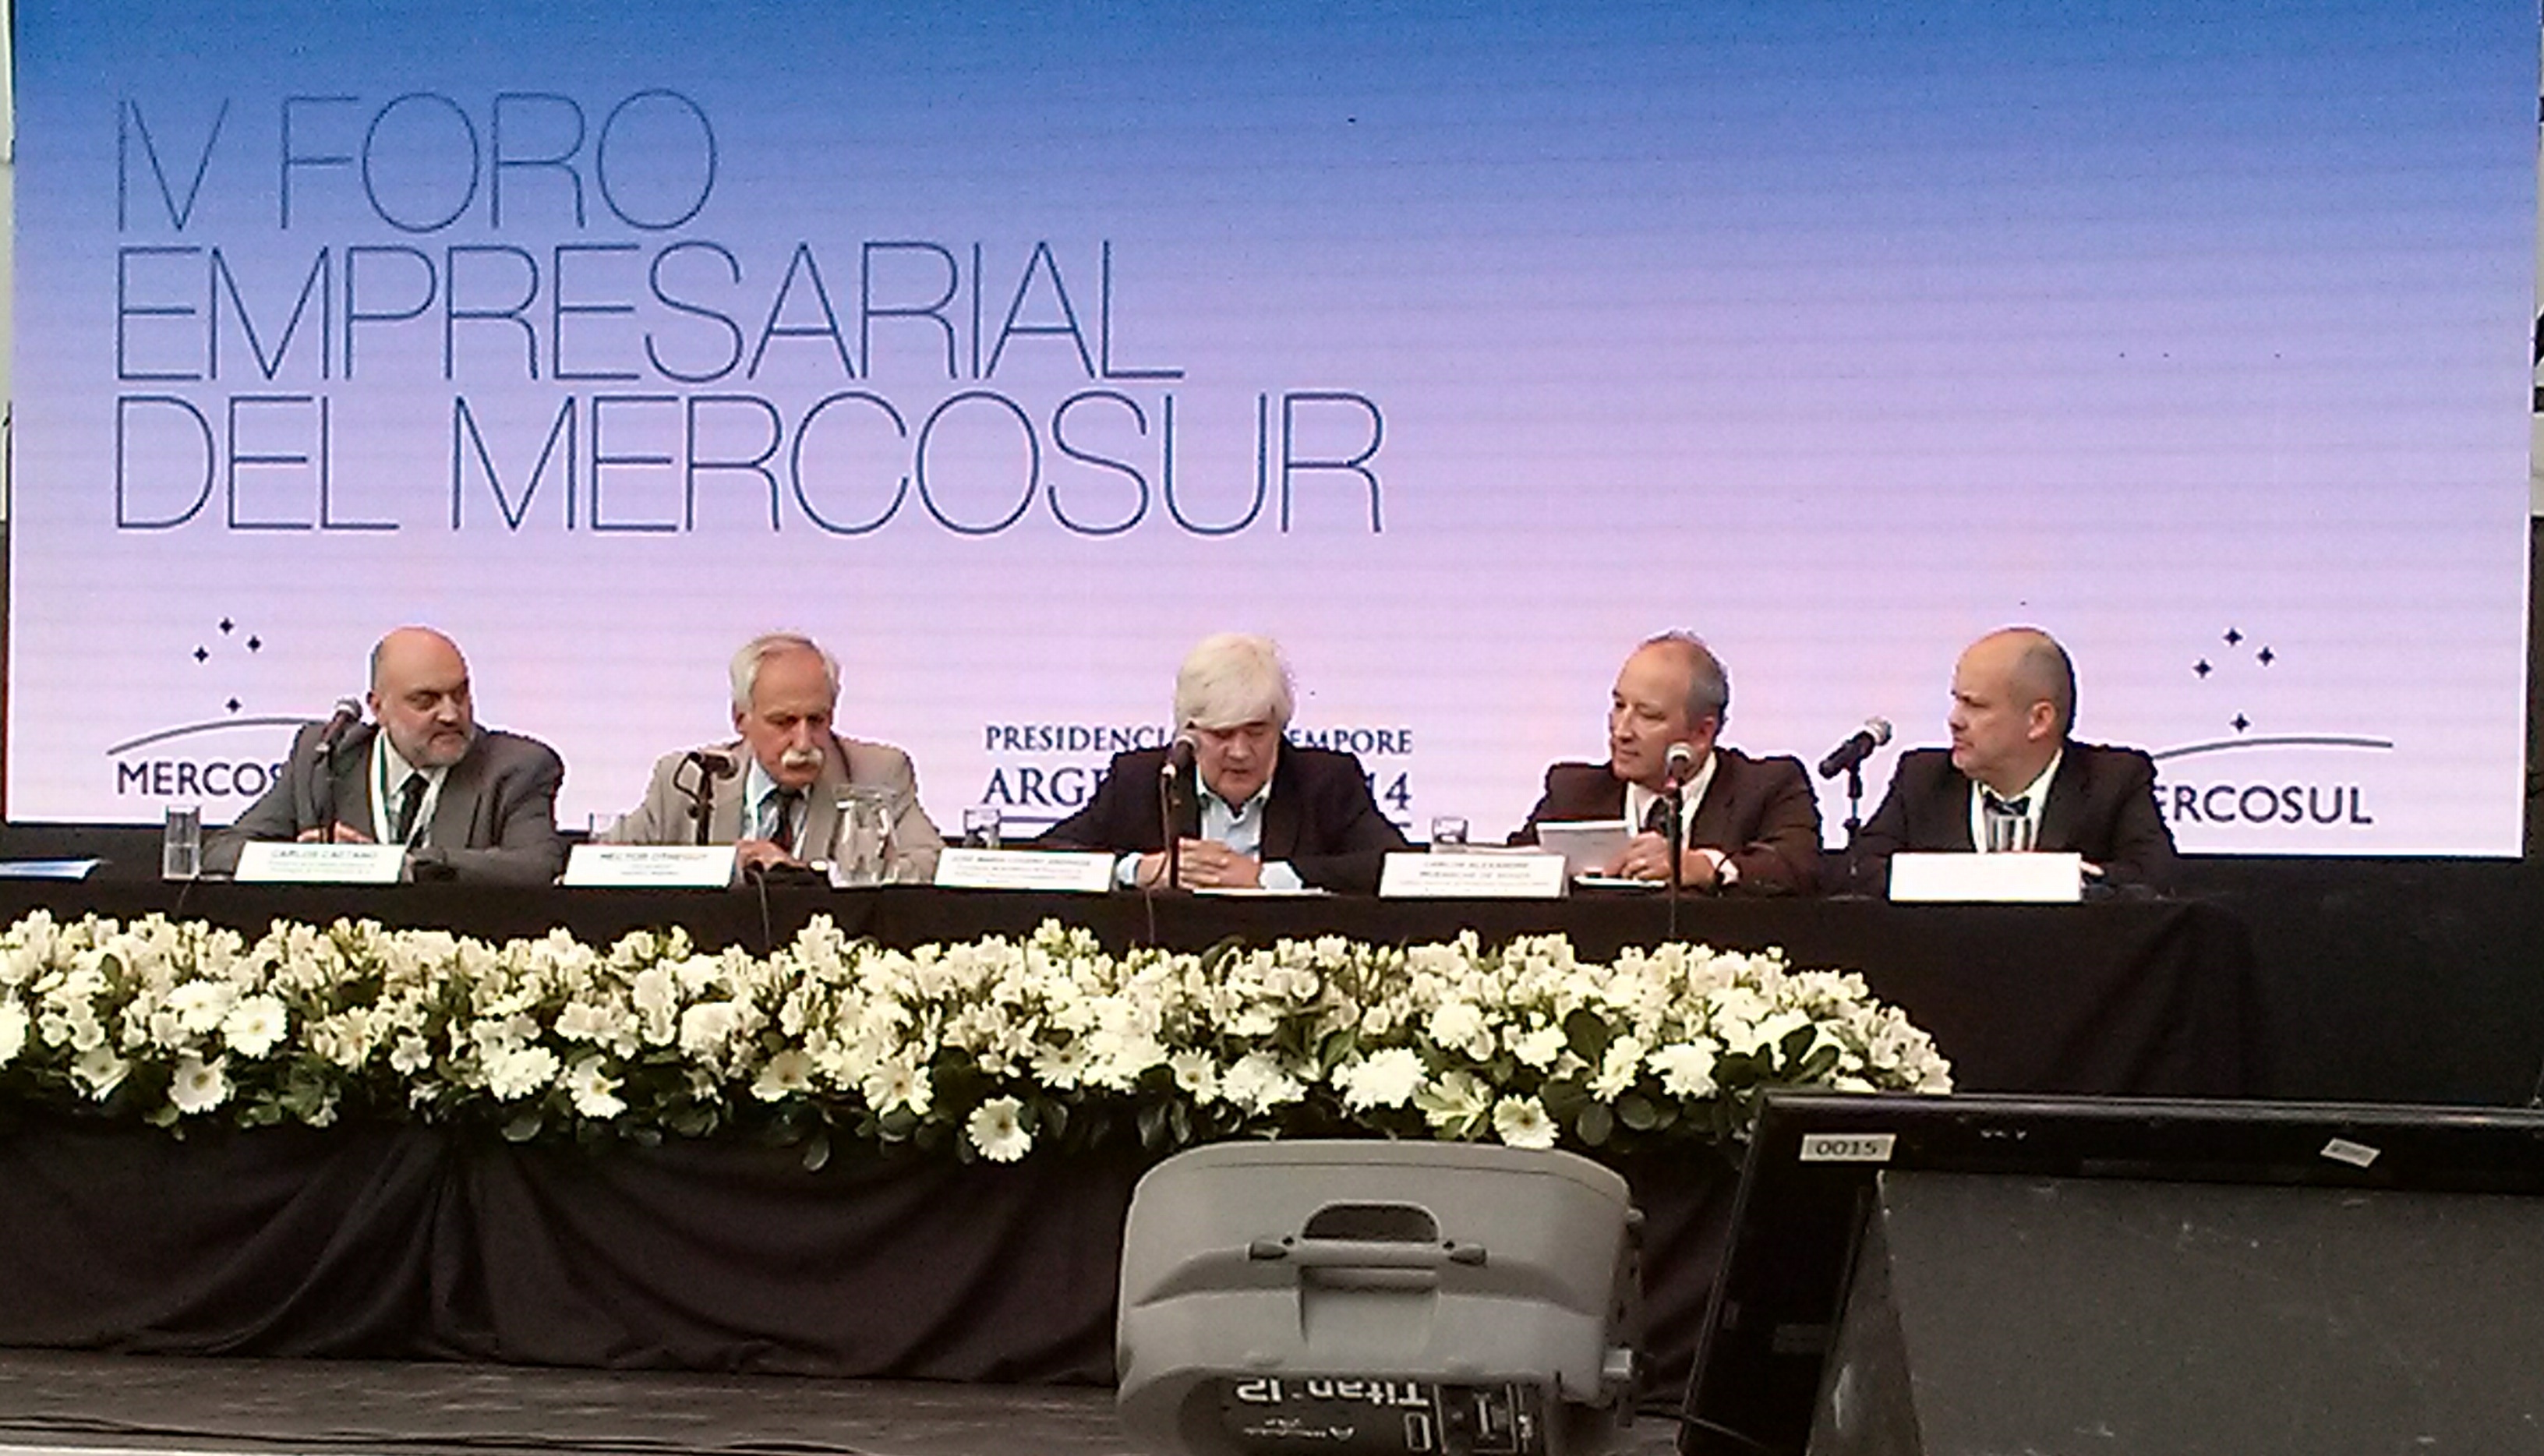 Cuti destacó importancia del intercambio regional en foro empresarial del Mercosur